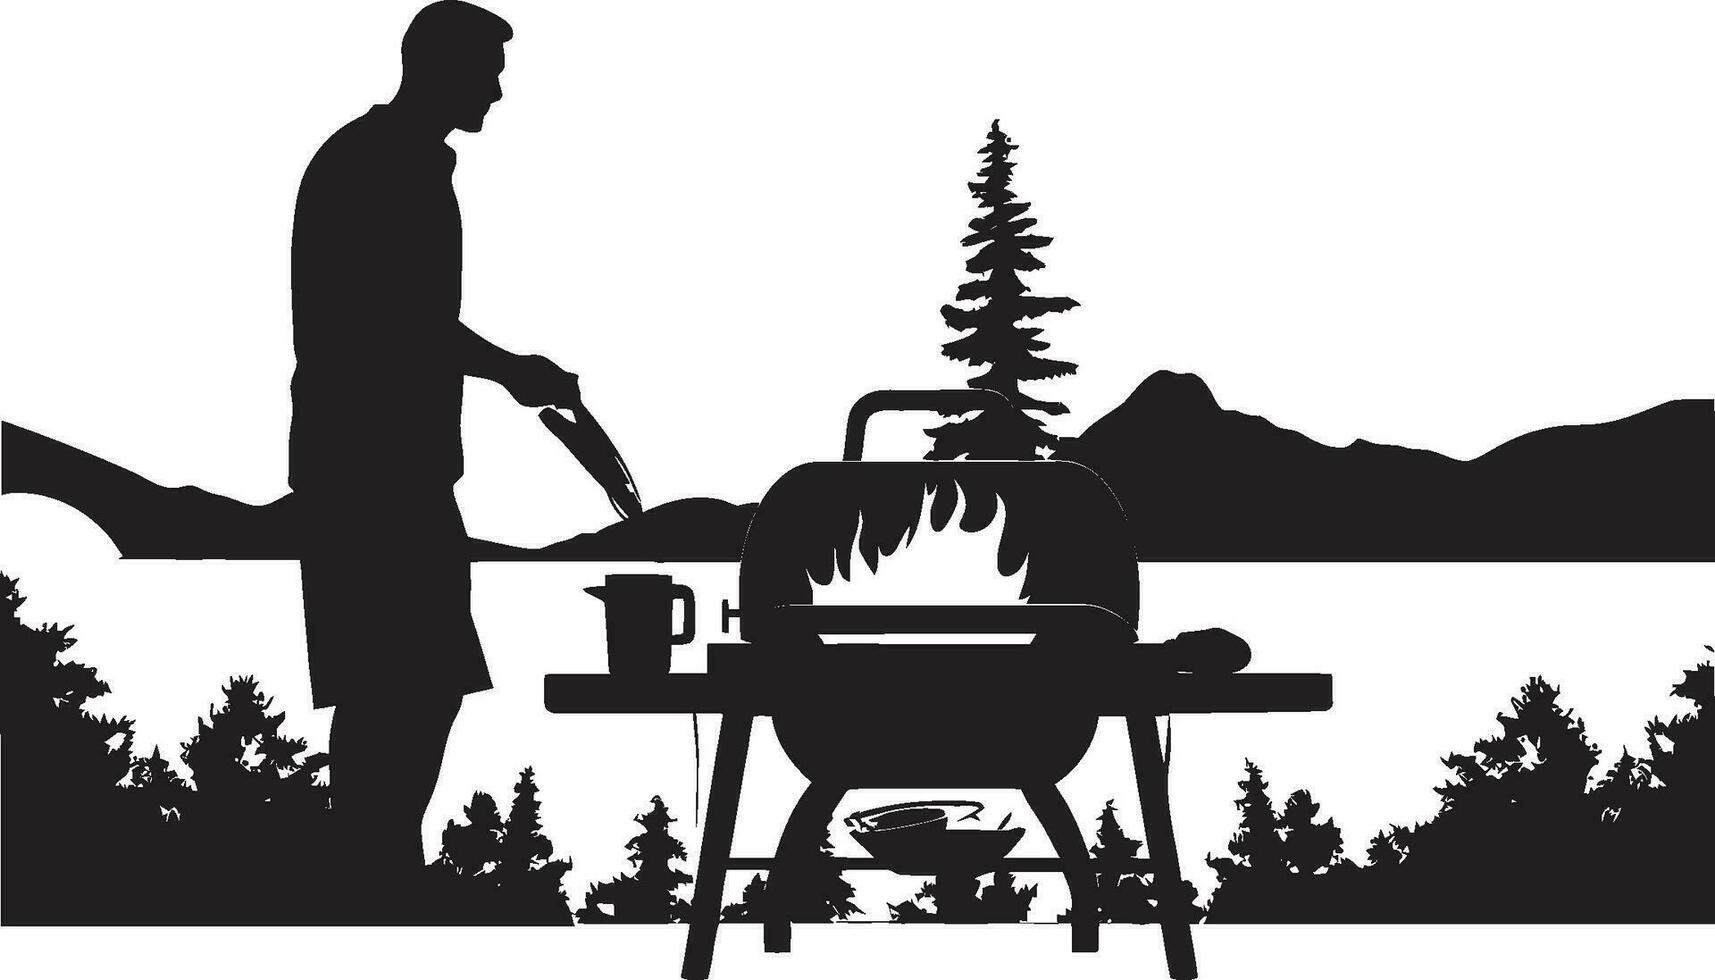 grillglyphix homme grillage vecteur symbole sarriette silhouette noir un barbecue logo dans vecteur